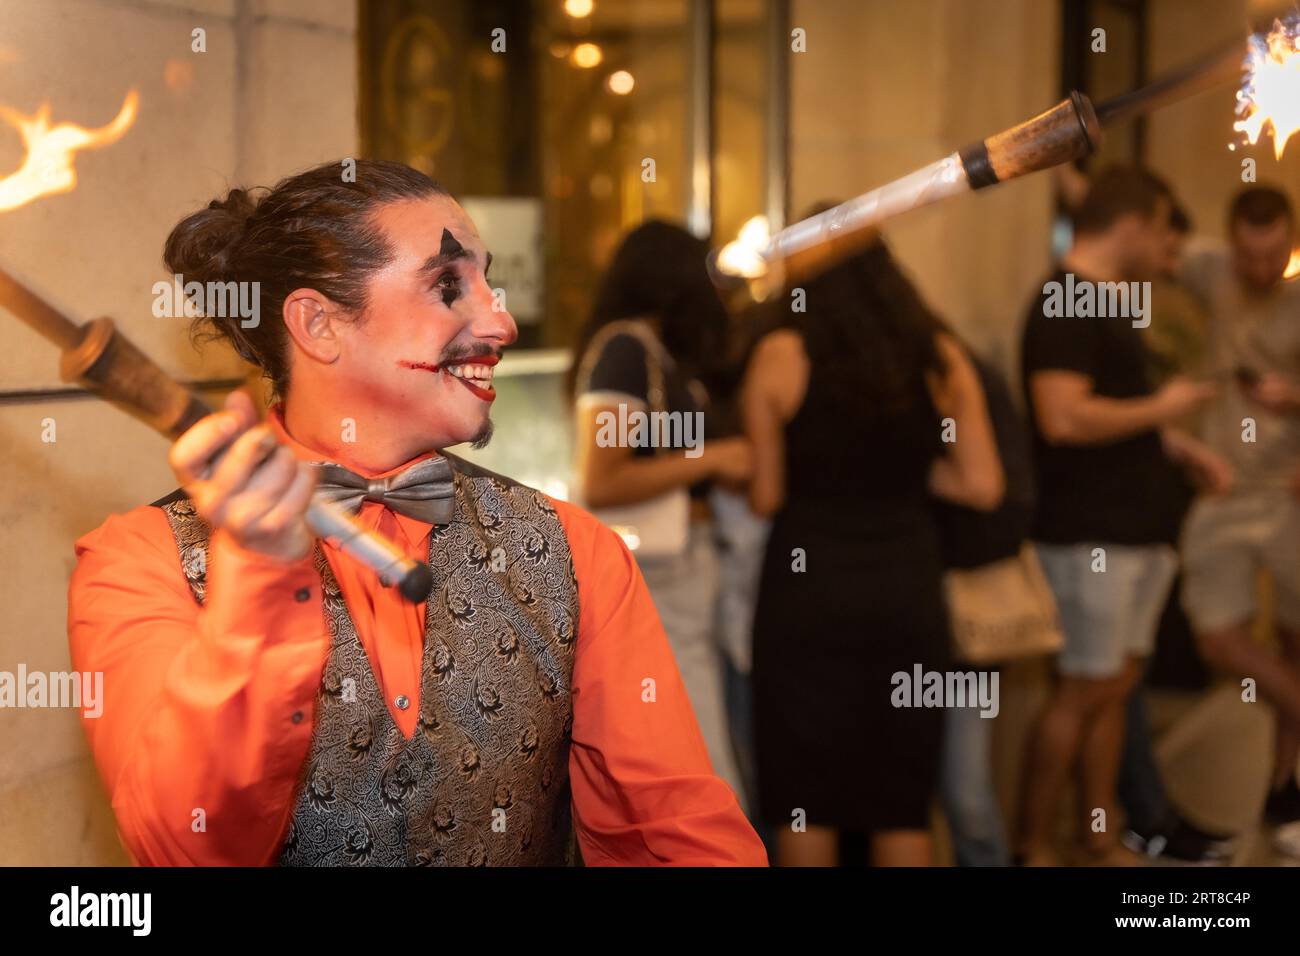 Jongleur souriant à une fête d'halloween jonglant des bâtons avec du feu, à l'entrée de la discothèque Banque D'Images